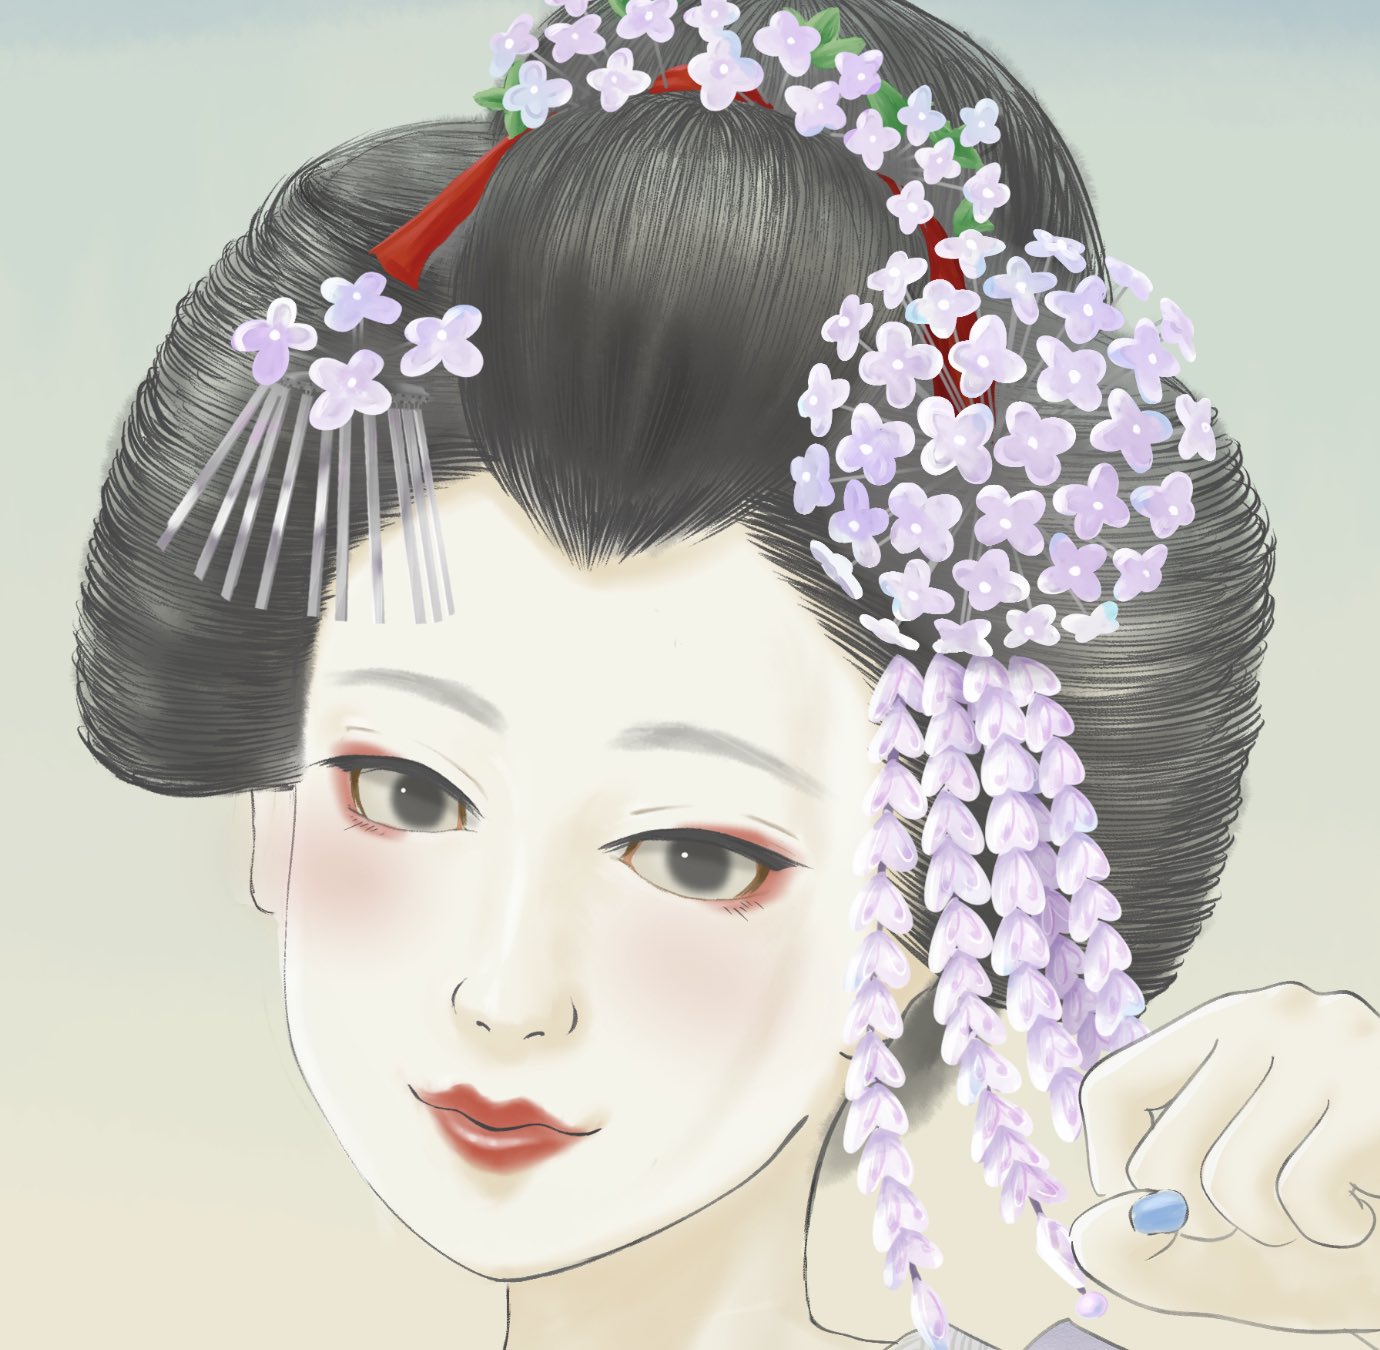 Twitter 上的 Kawakamitetsuya 紫陽花と舞妓さん たくさん描き込んだところなどのアップバージョンです お顔可愛いと思ったらいいねください笑 紫陽花 舞妓 芸妓 芸者 絵描きさんと繫がりたい イラスト好きな人と繋がりたい T Co 6lefwjqmhr Twitter